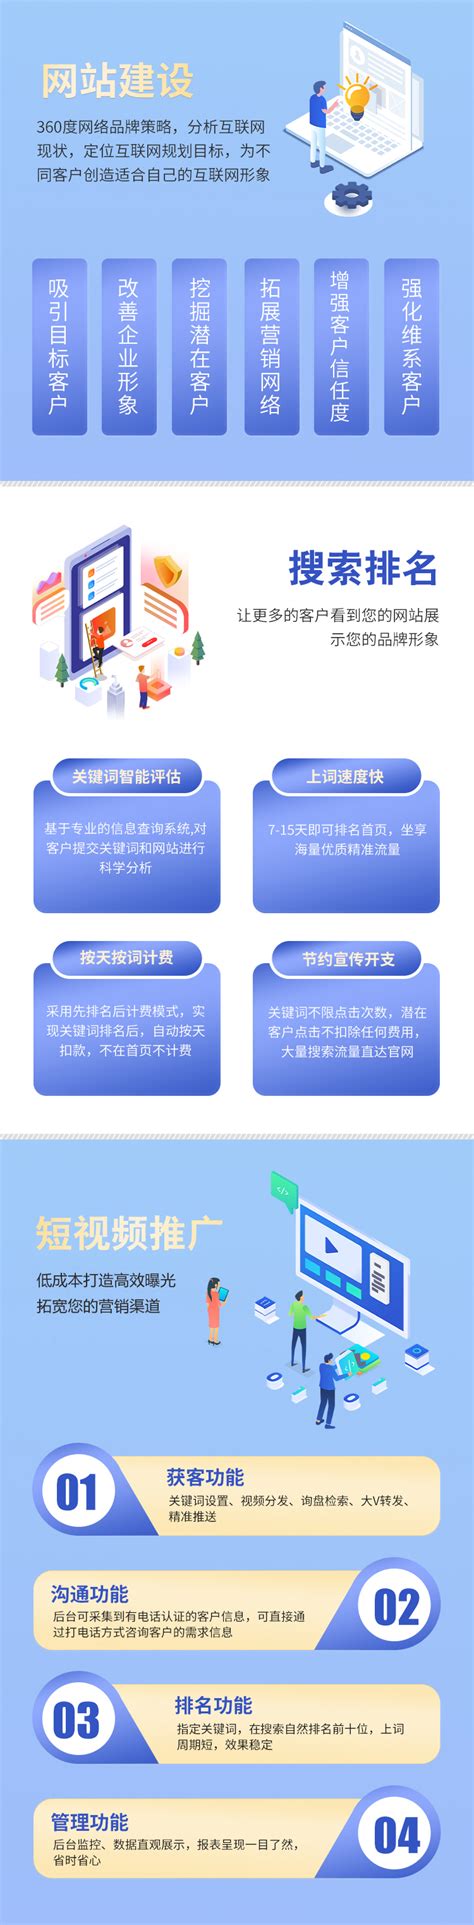 重庆企业网站建设制作费用